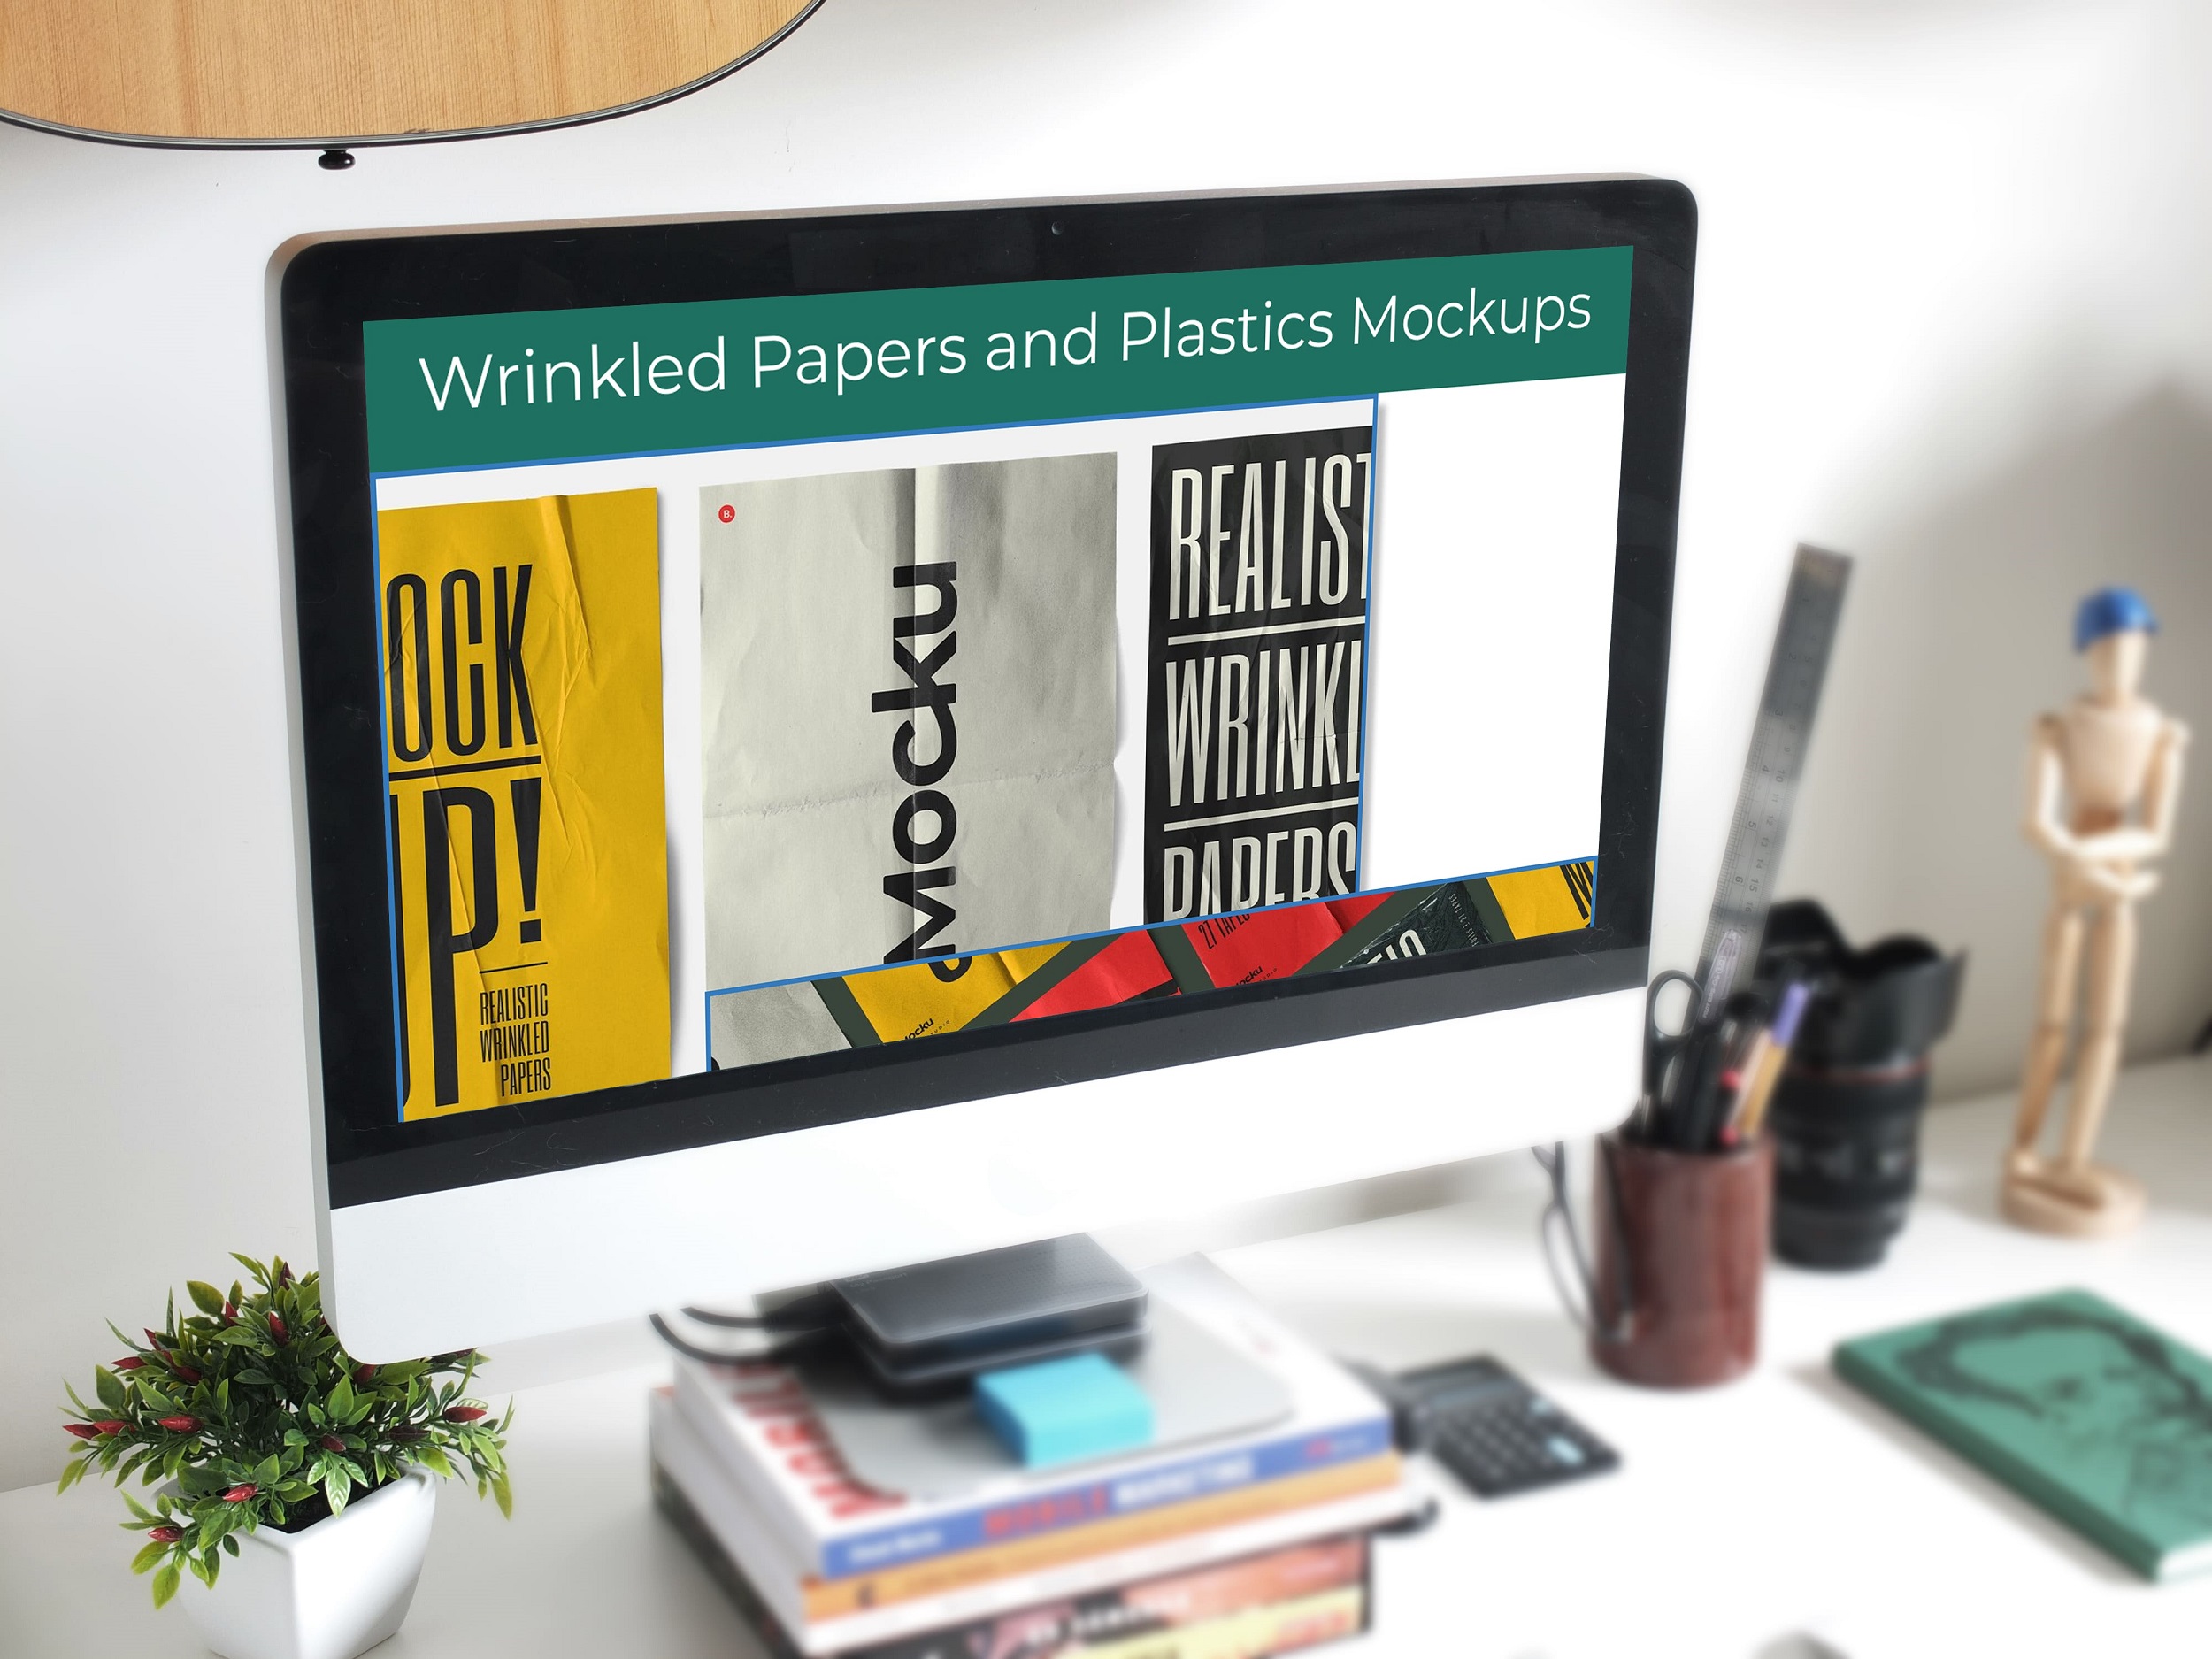 Wrinkled Papers and Plastics Mockups desktop mockup.